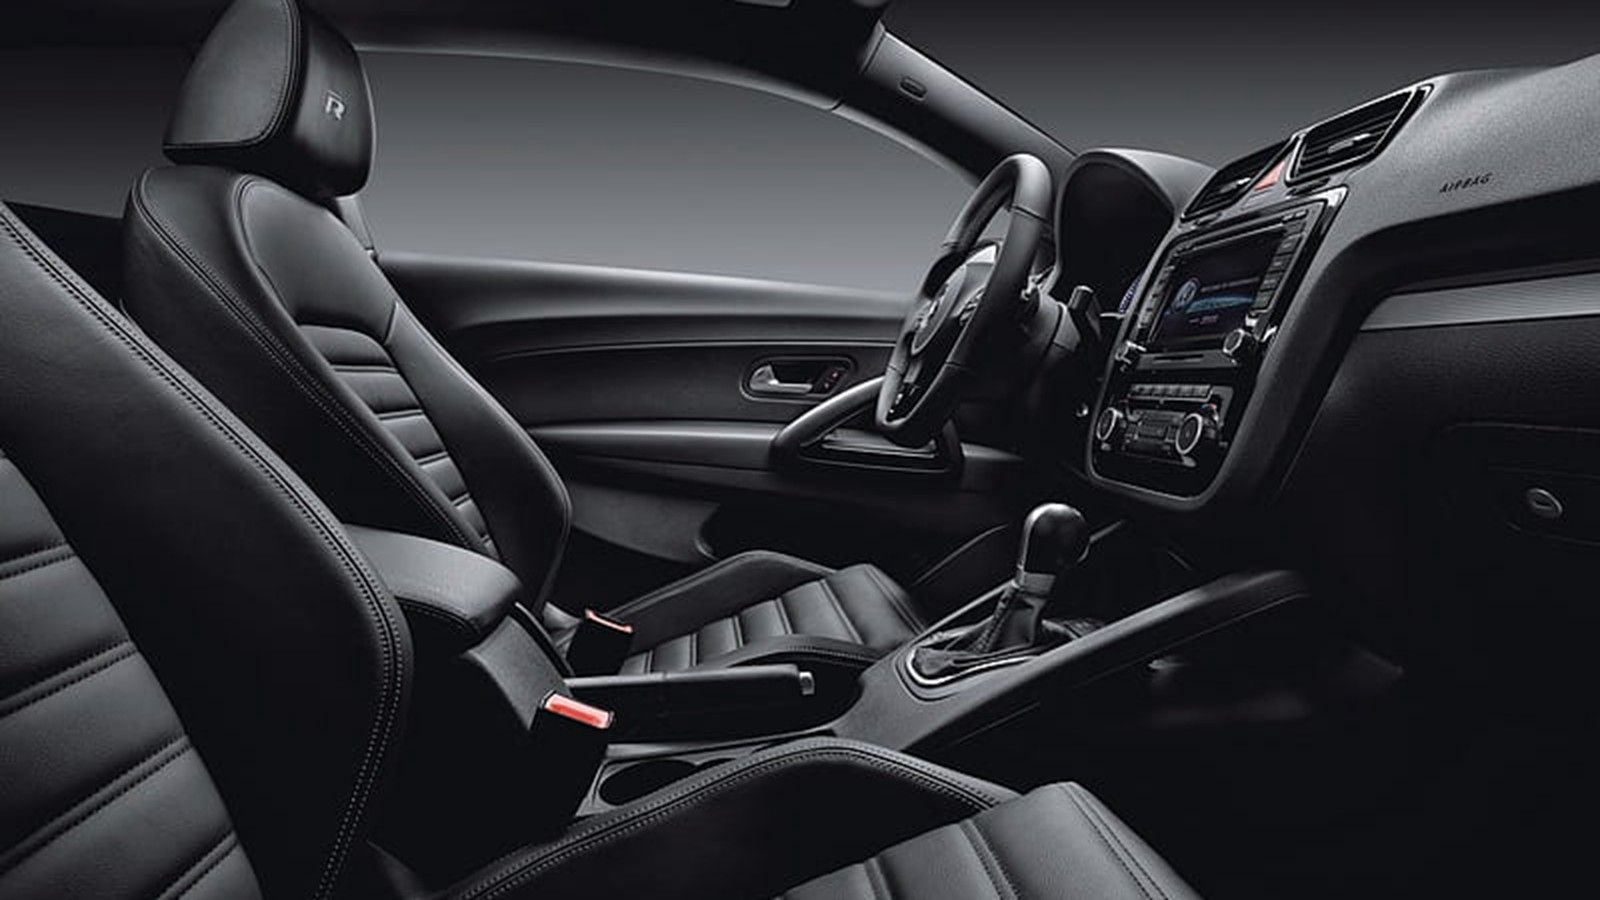 2021 Volkswagen Scirocco 1.4TSI Interior 001